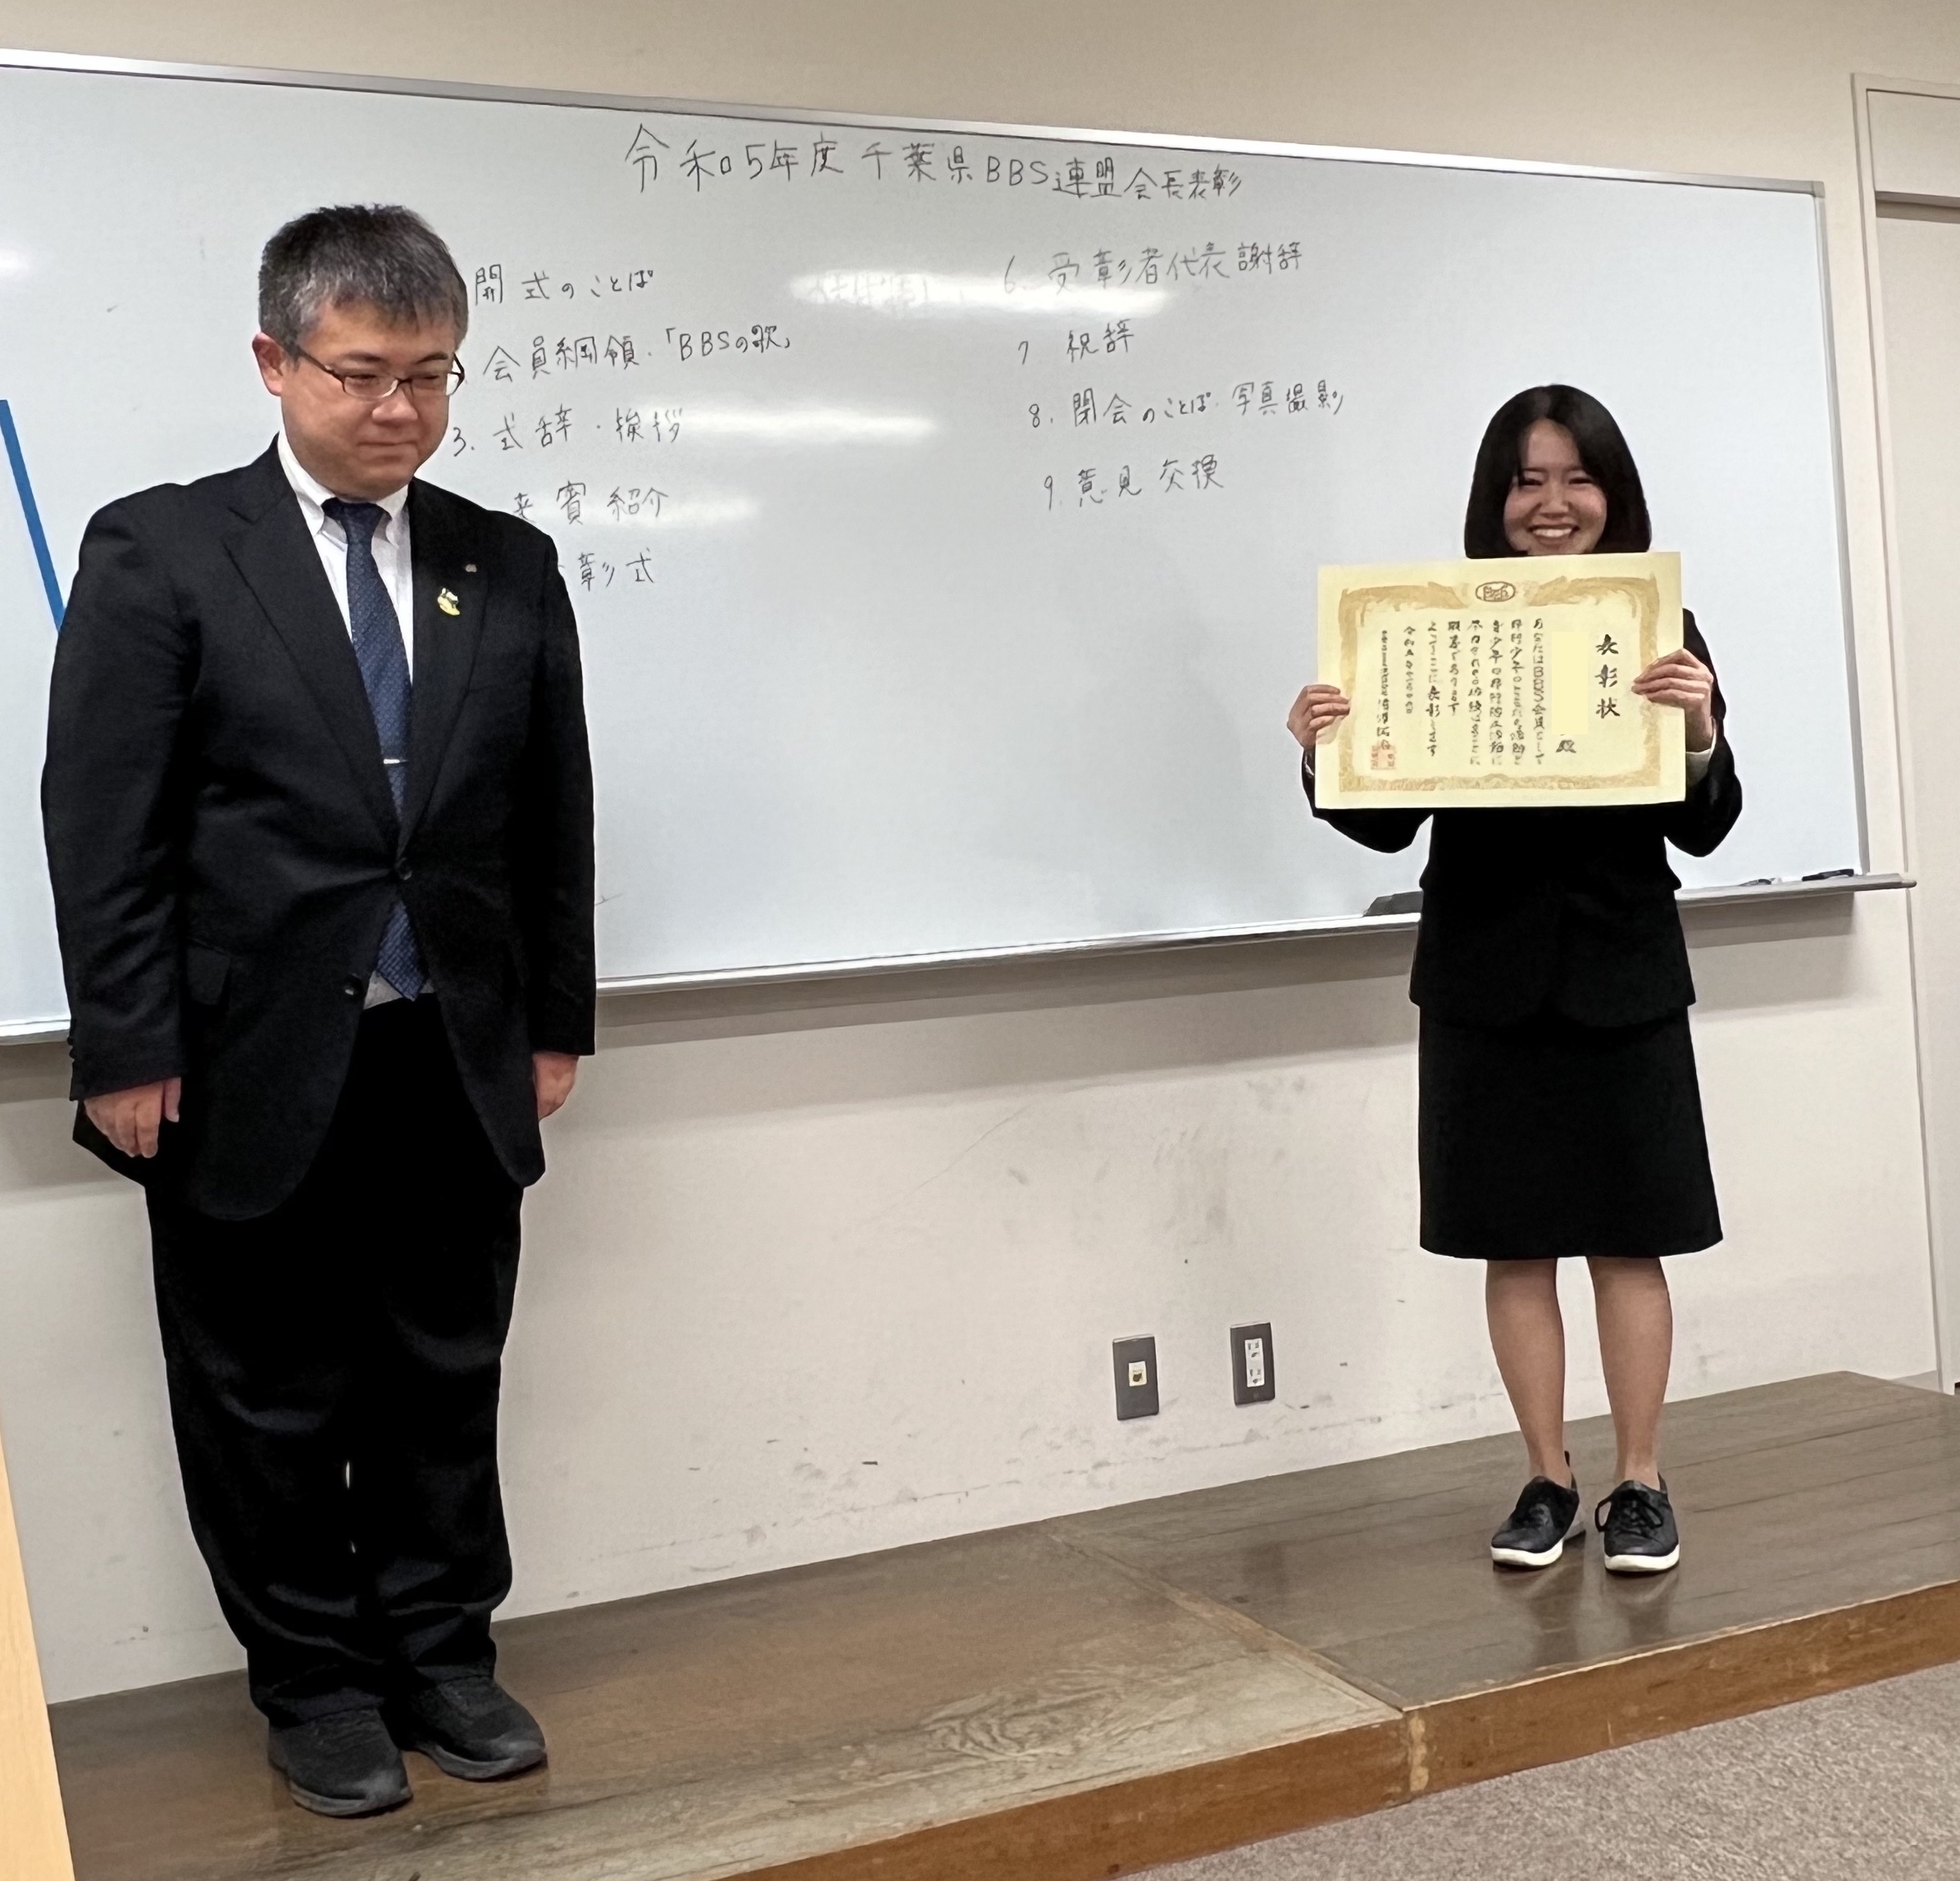 千葉県BBS表彰式で聖徳大学心理学科学生3名が表彰されました